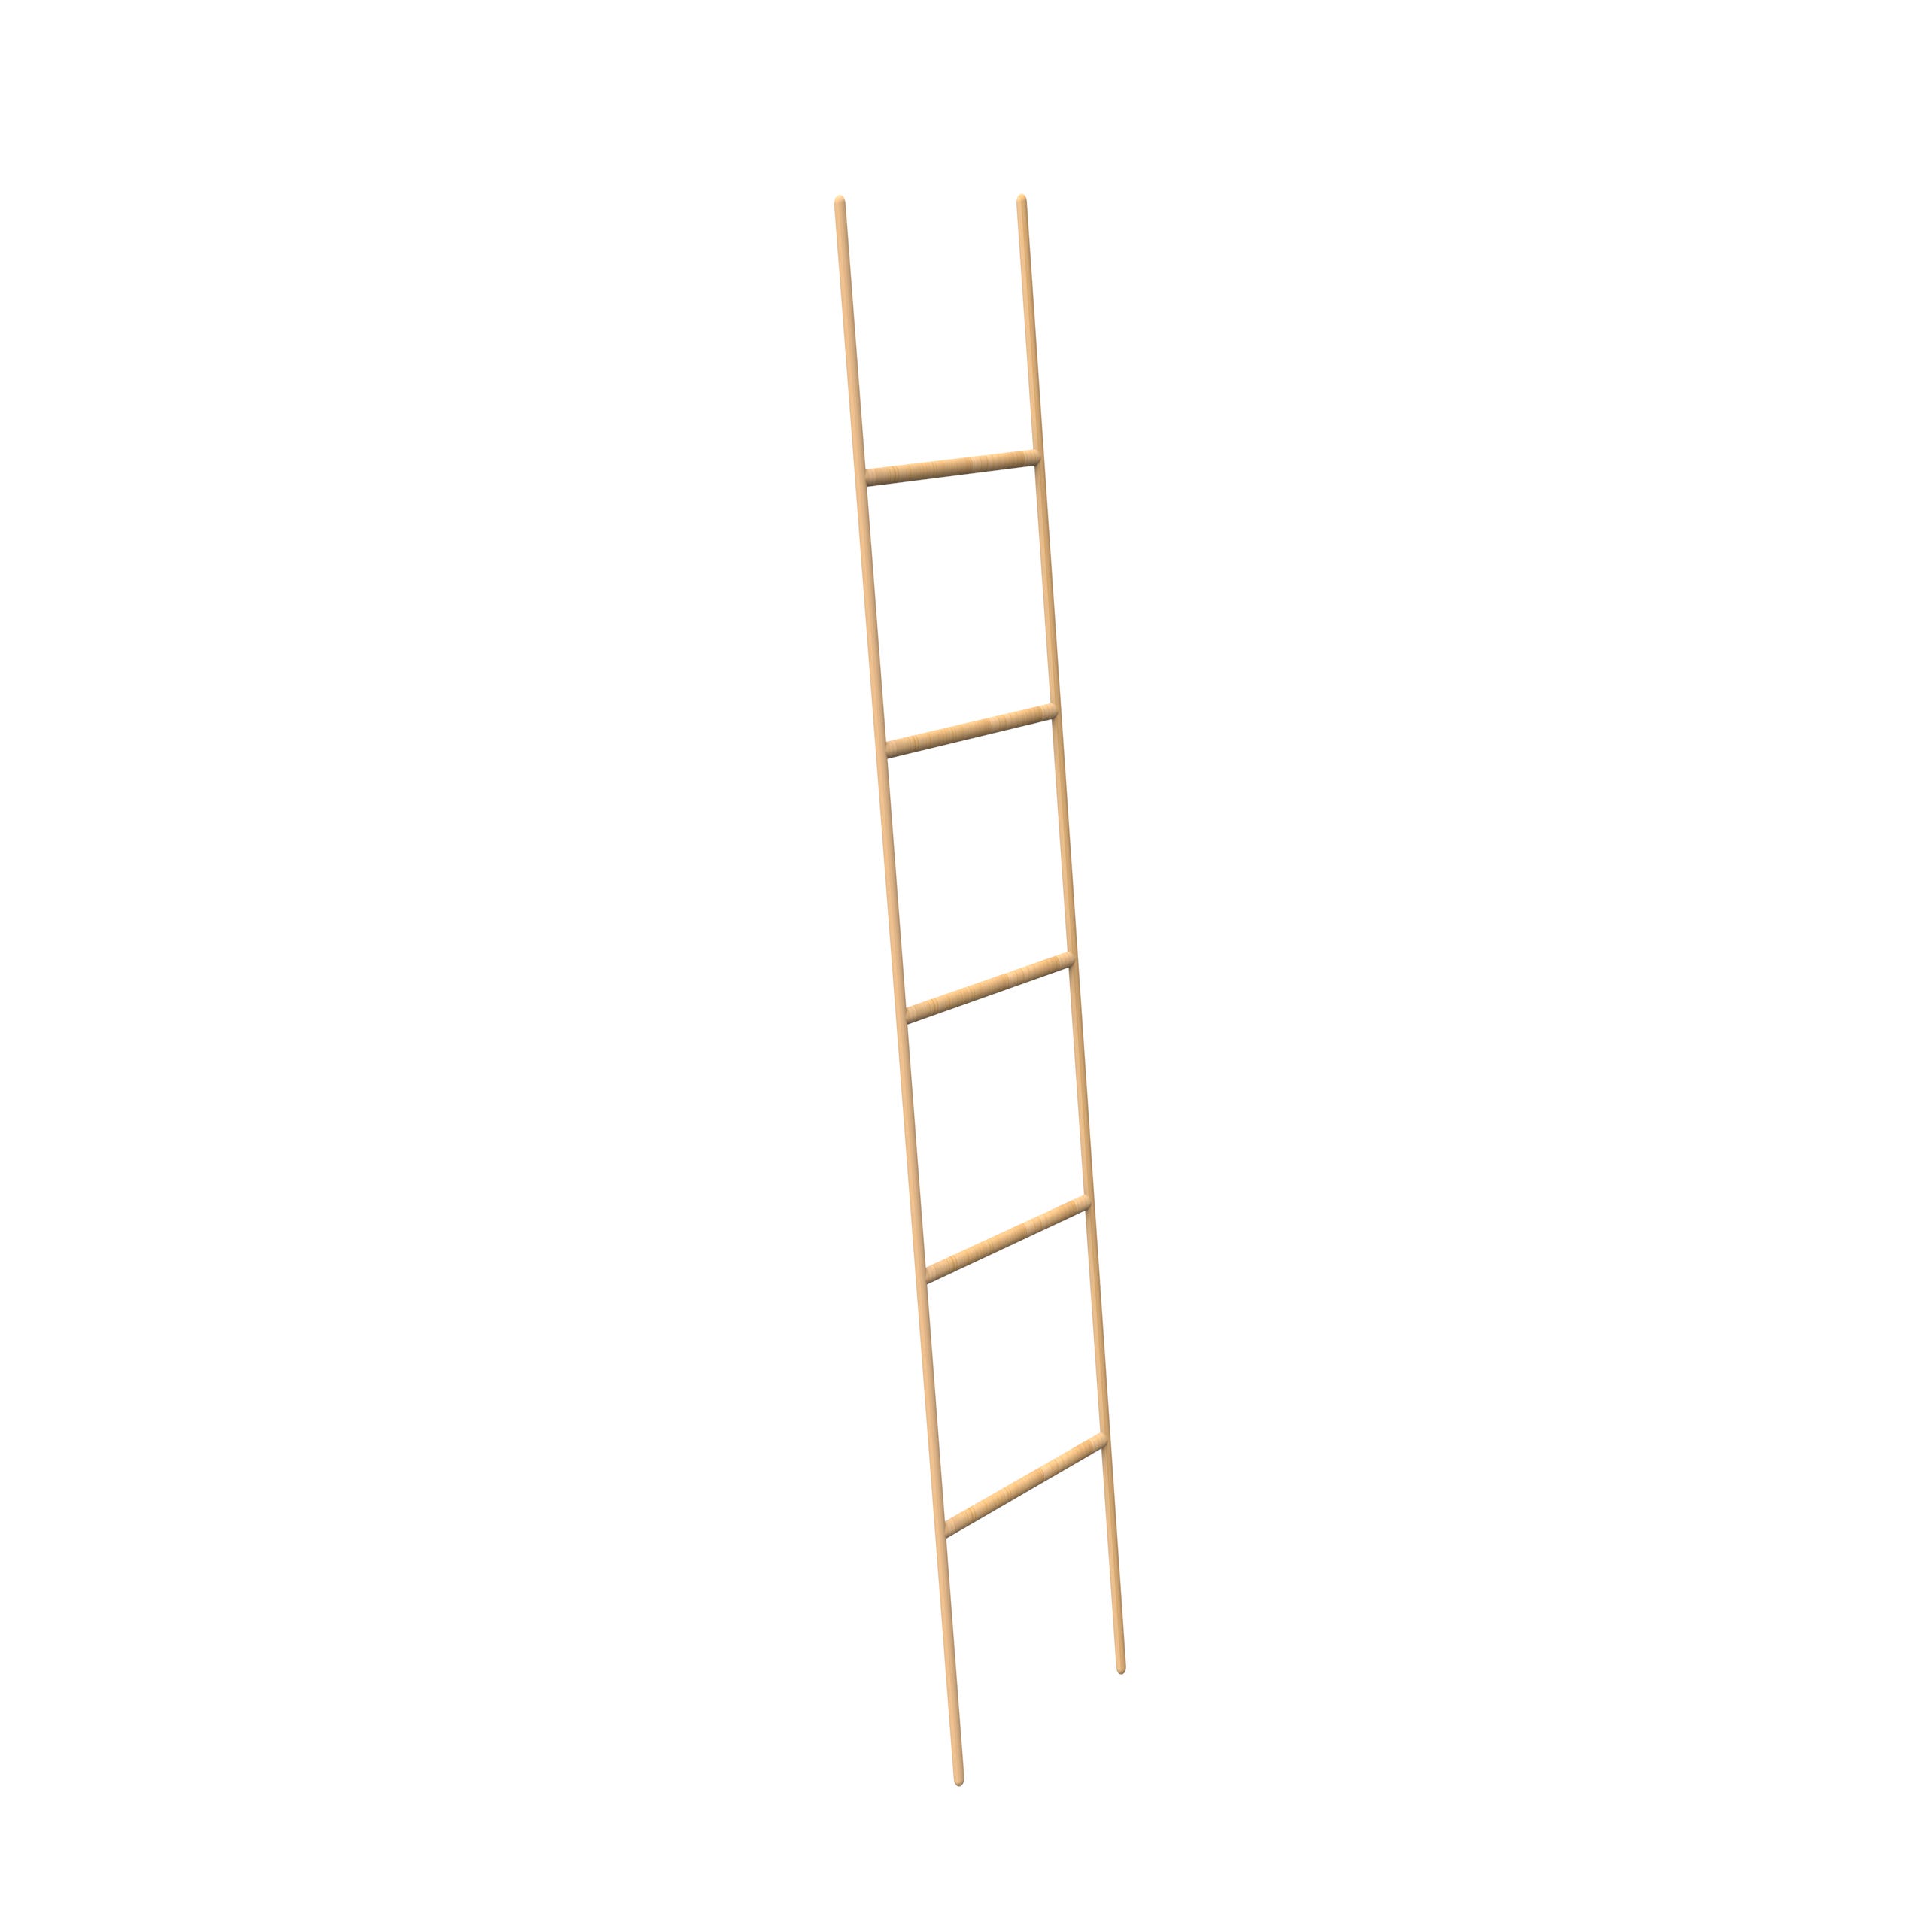 Toallero escalera - Bambú natural - 5 niveles - 189x45x2cm